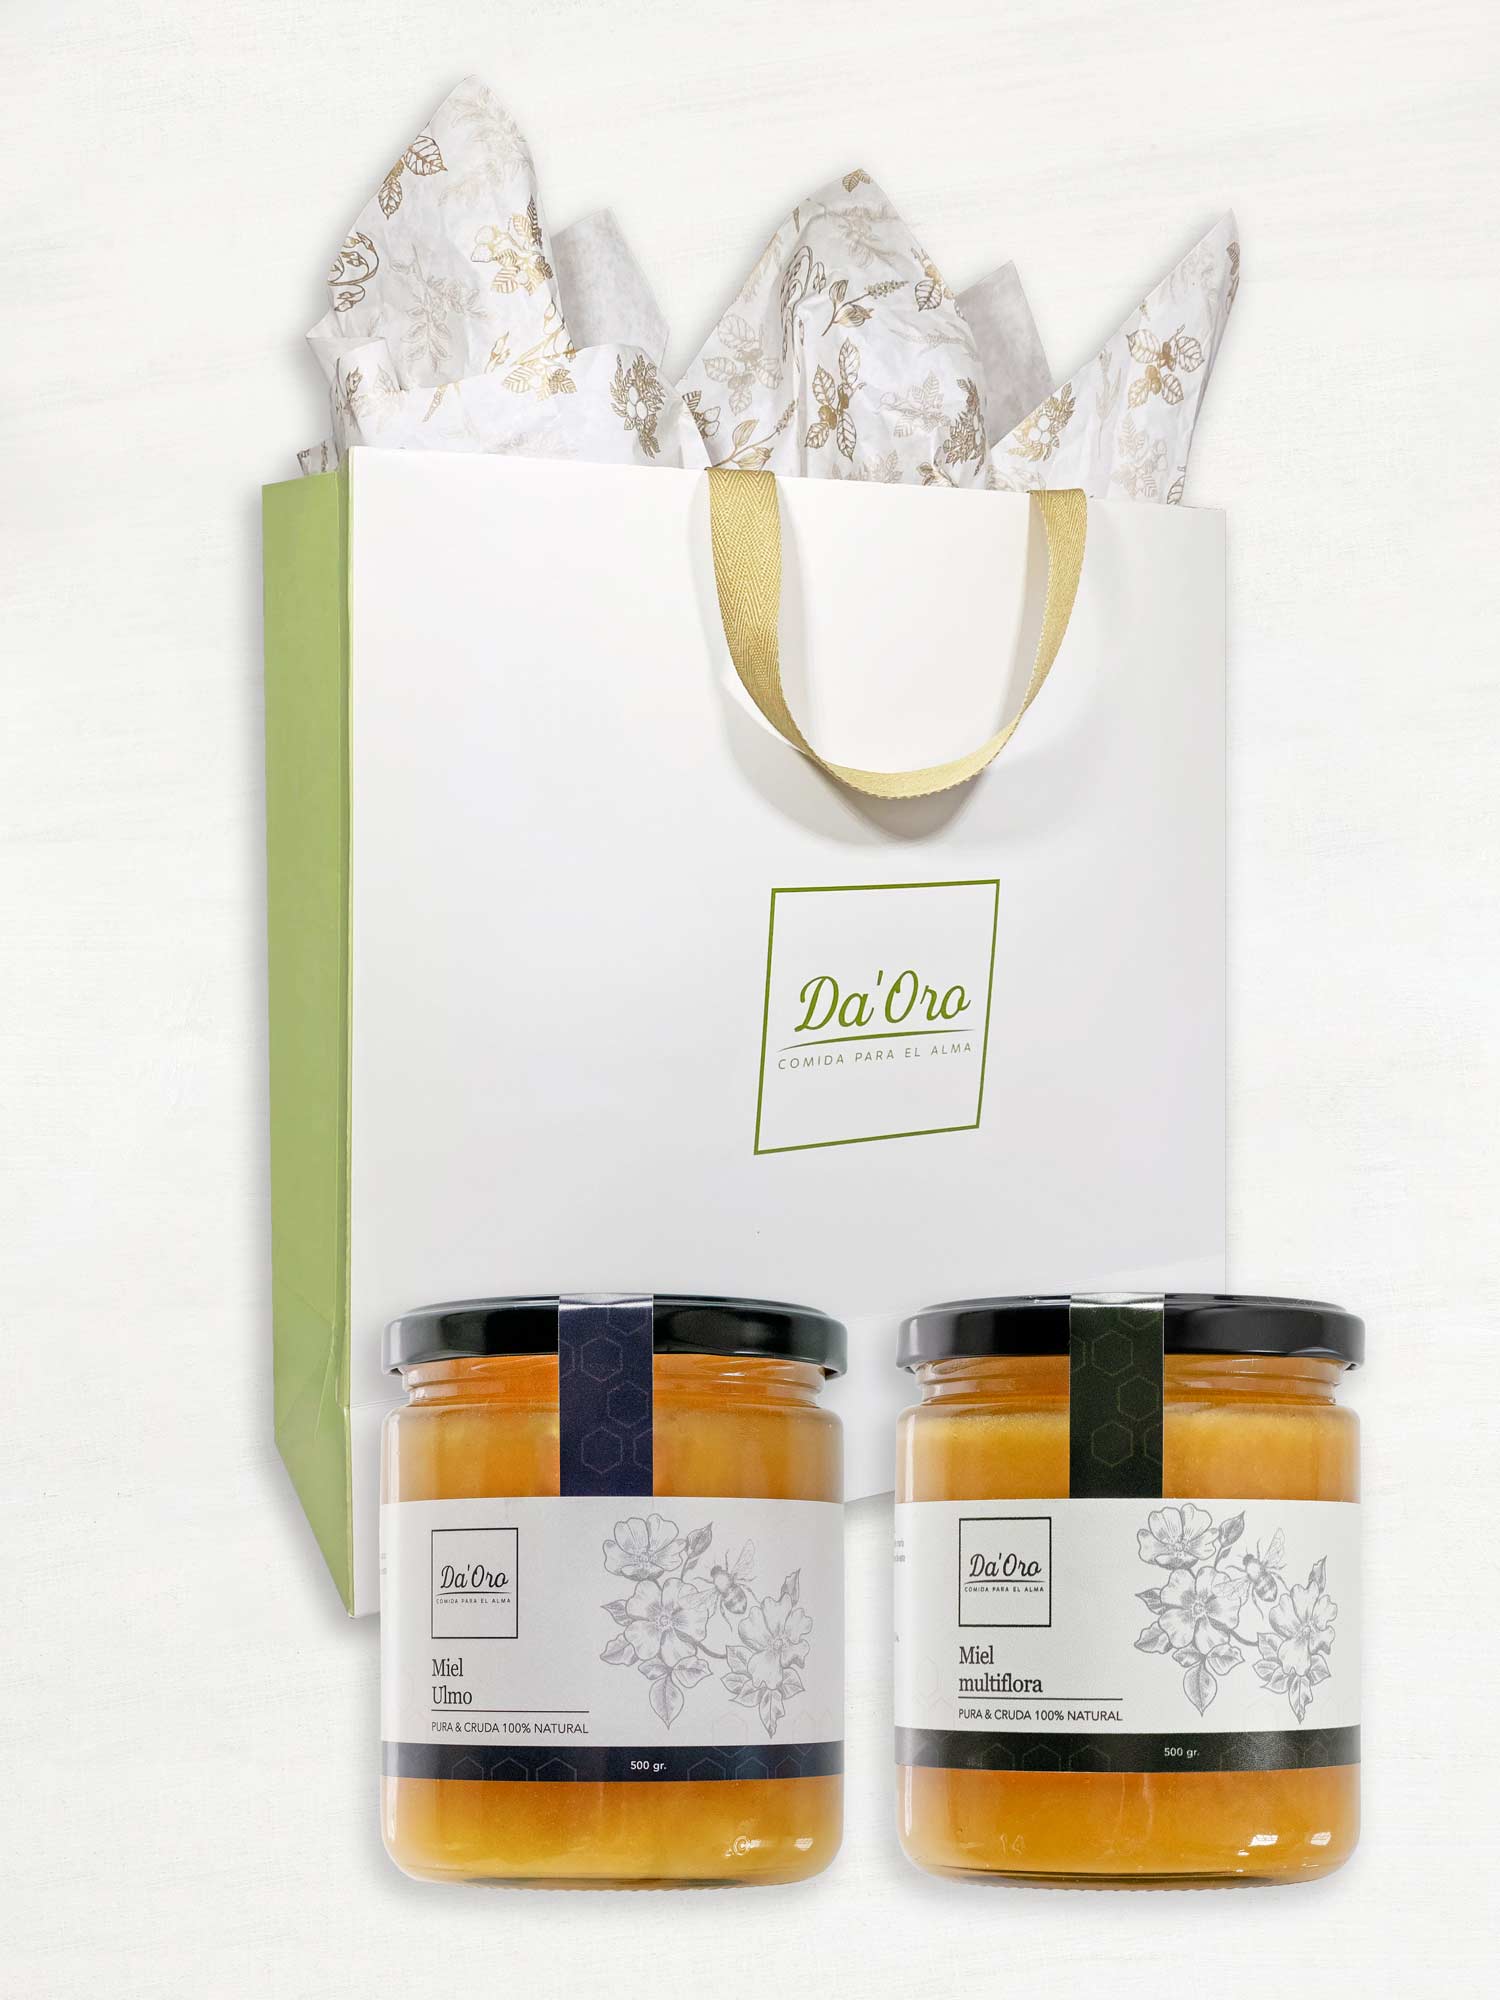 Bolsa de regalo marca Da'Oro con dos frascos de vidrio con miel